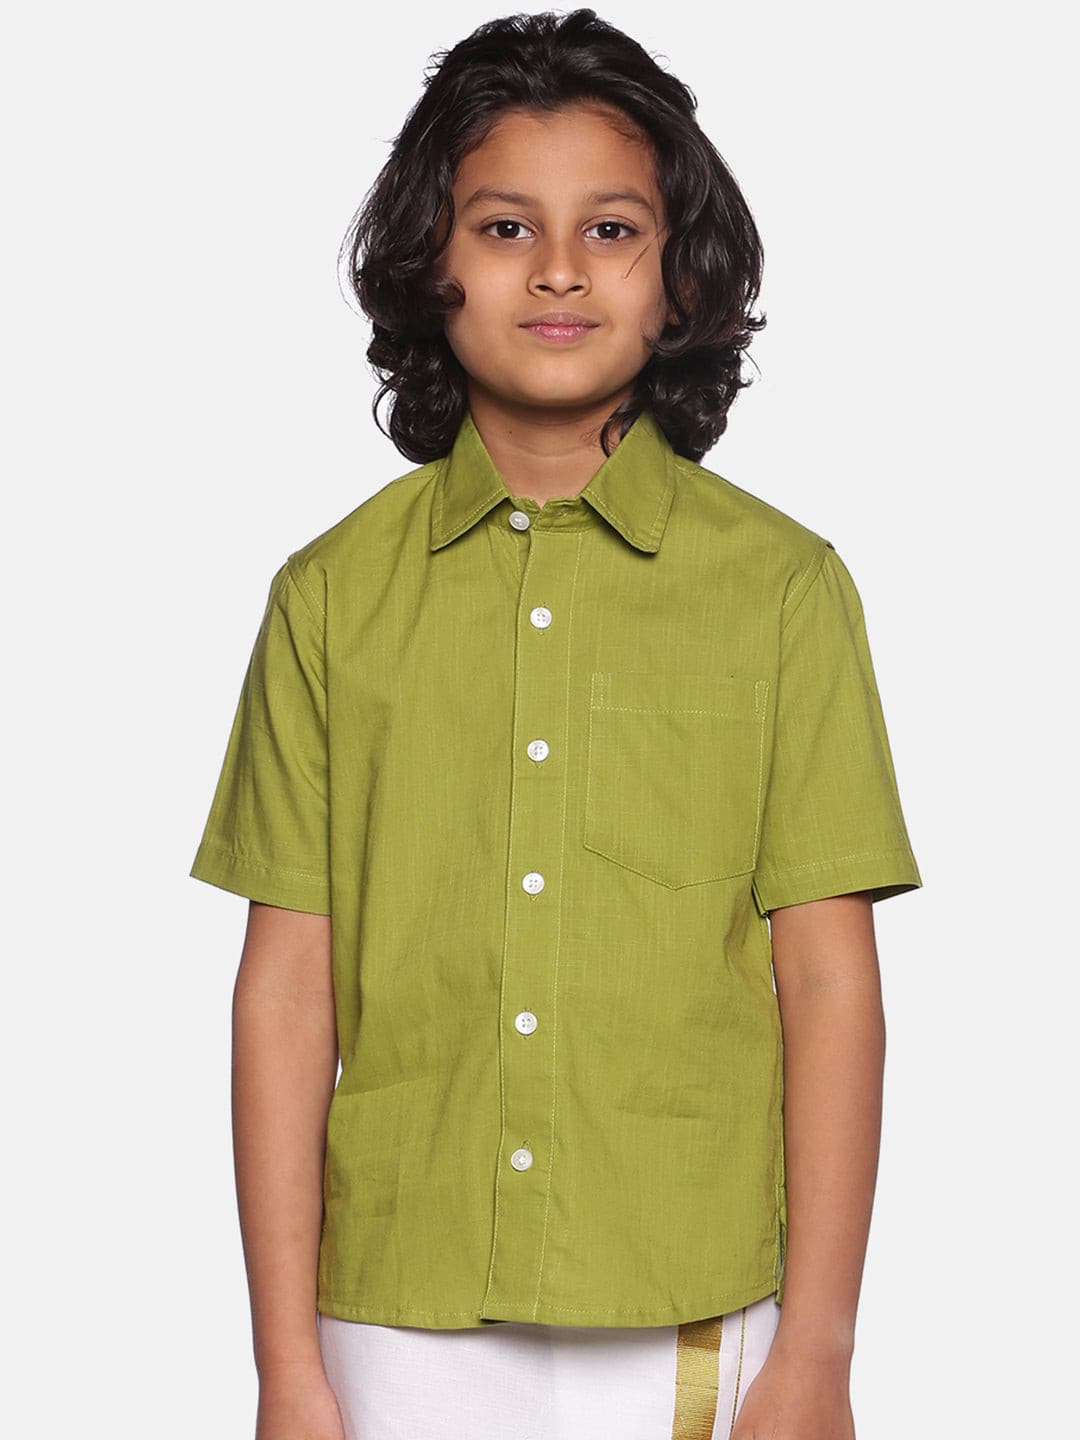 Boys Green Colour Cotton Shirt